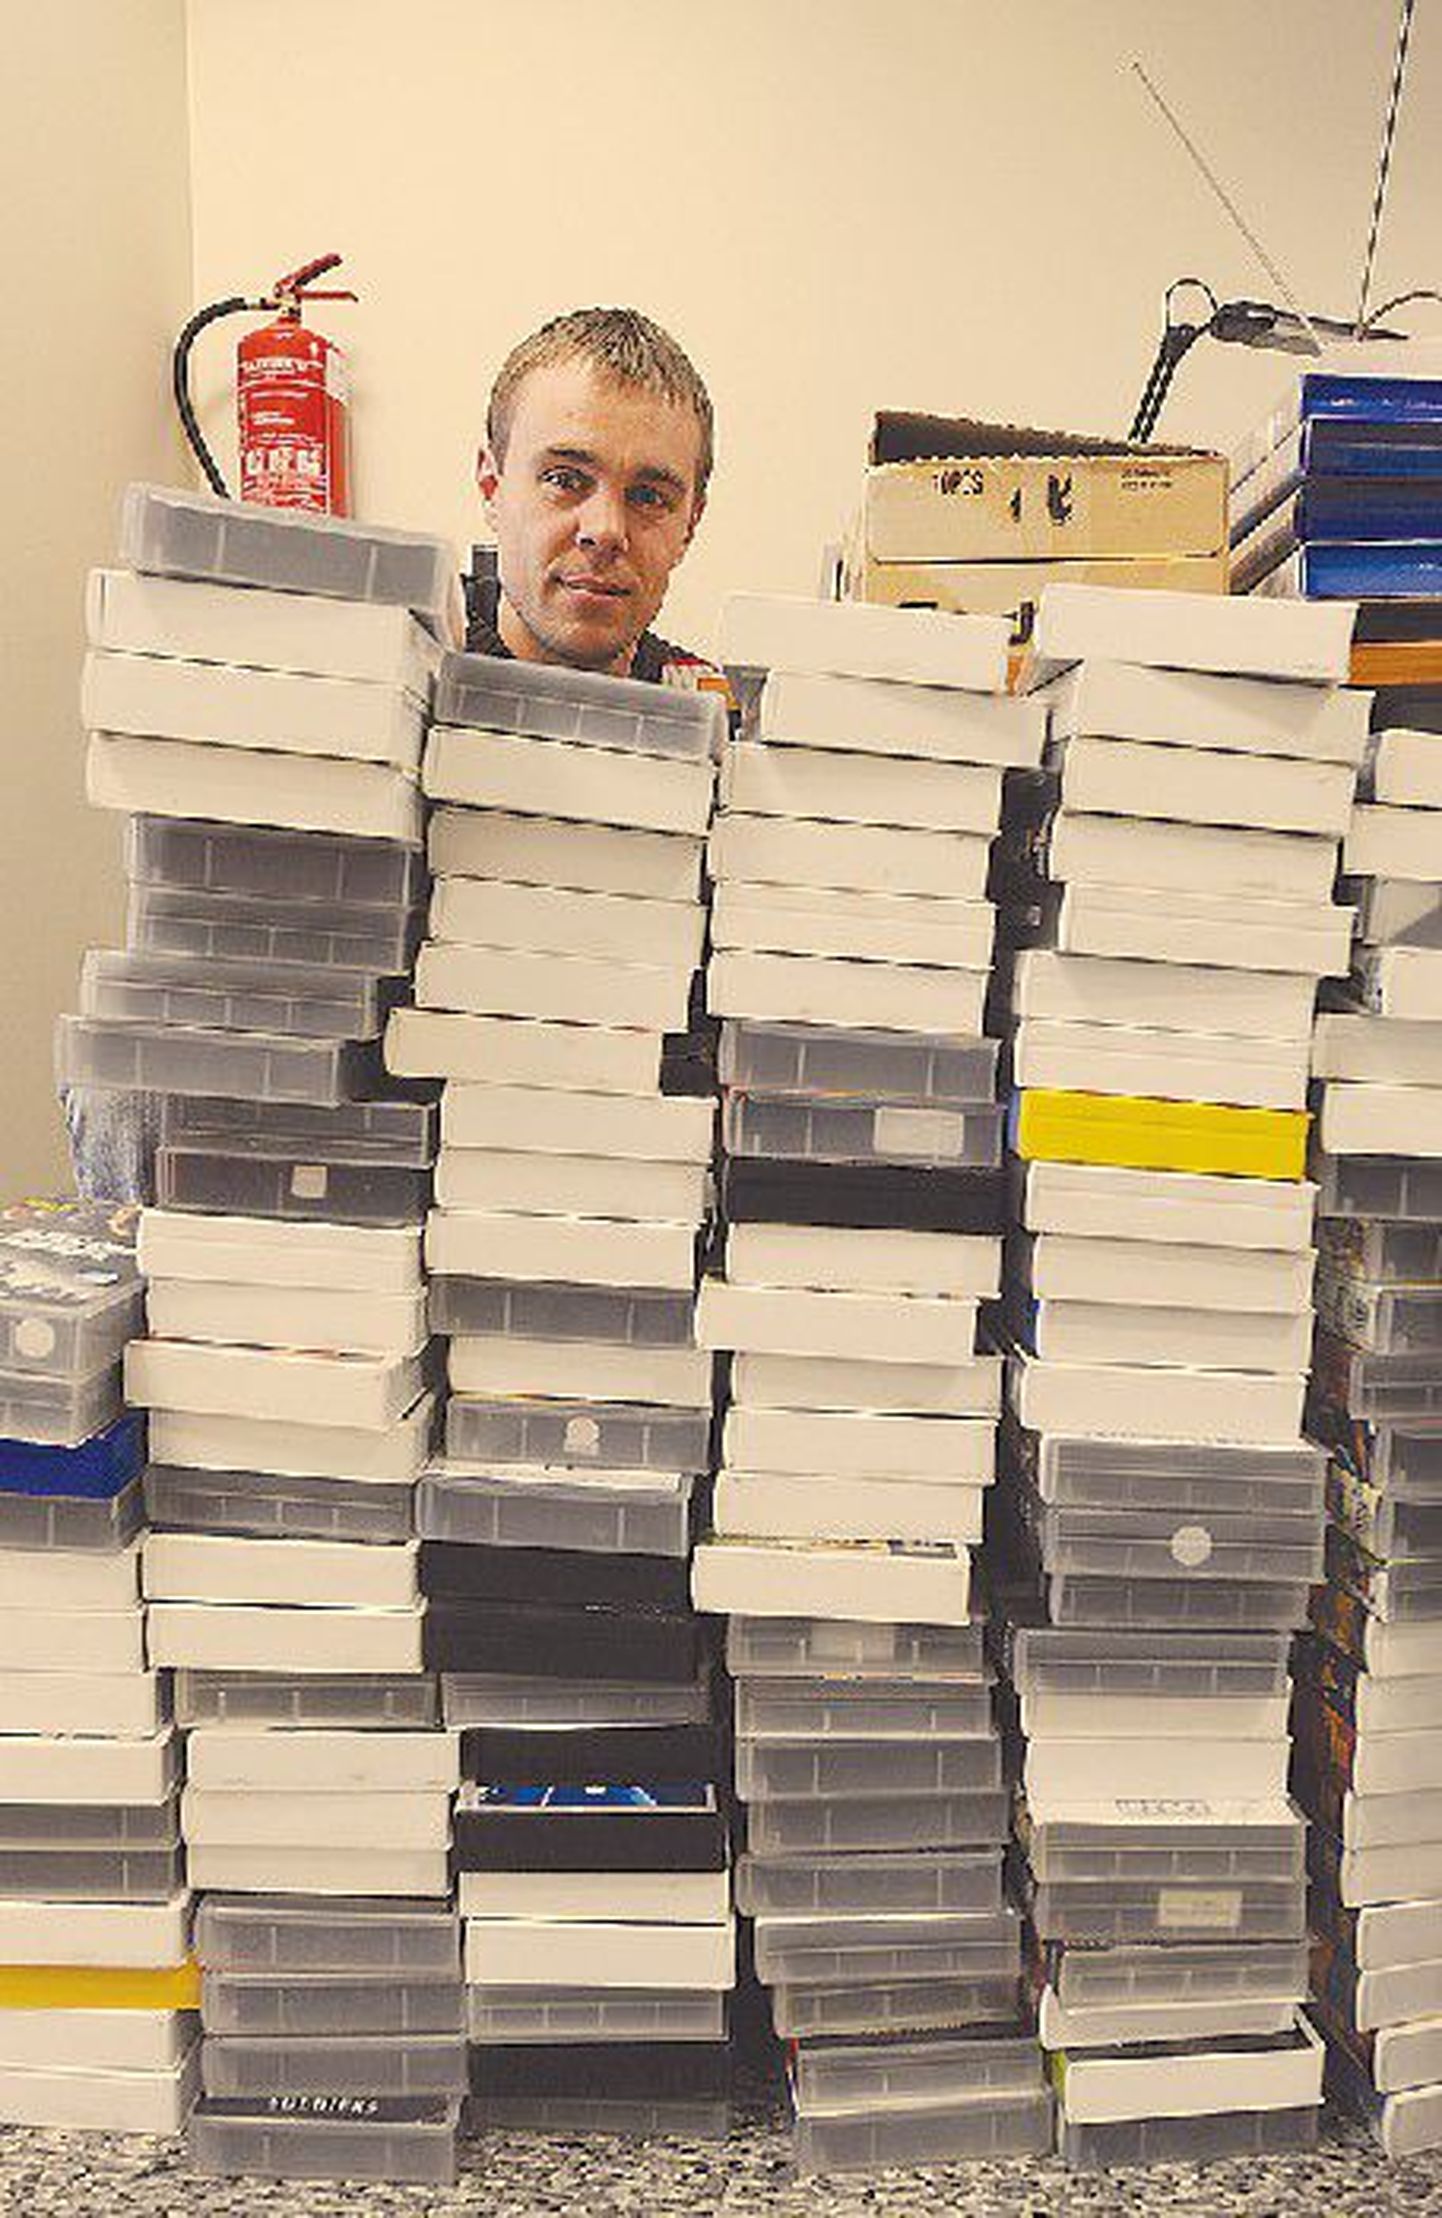 Эрик Мандре демонстрирует конфискованные полицией кассеты.